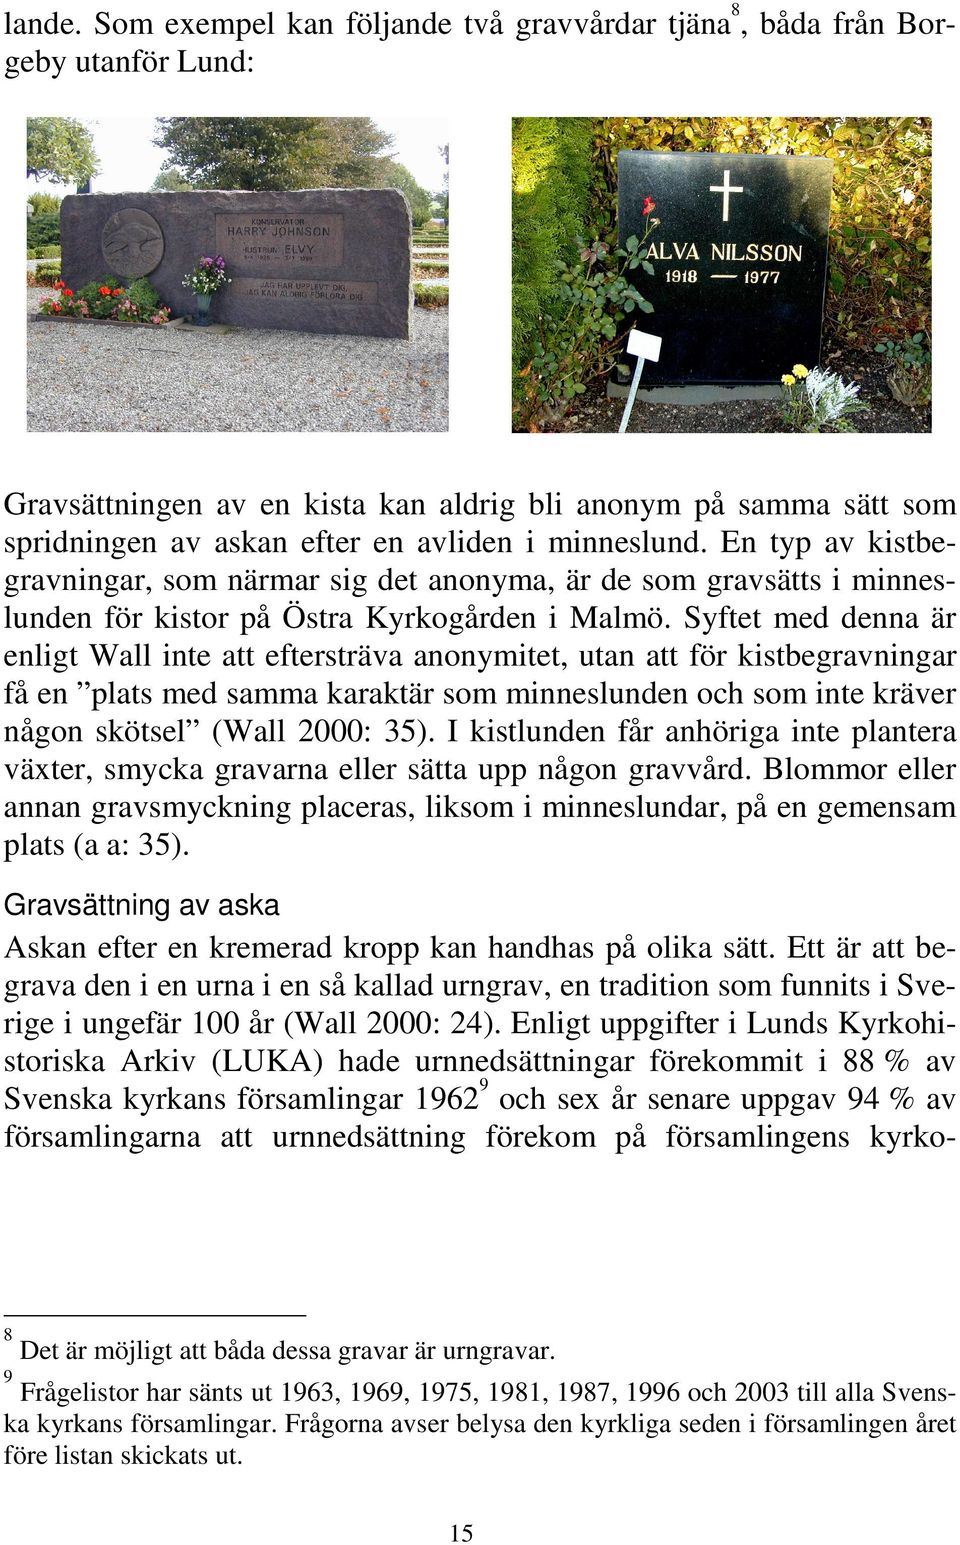 En typ av kistbegravningar, som närmar sig det anonyma, är de som gravsätts i minneslunden för kistor på Östra Kyrkogården i Malmö.